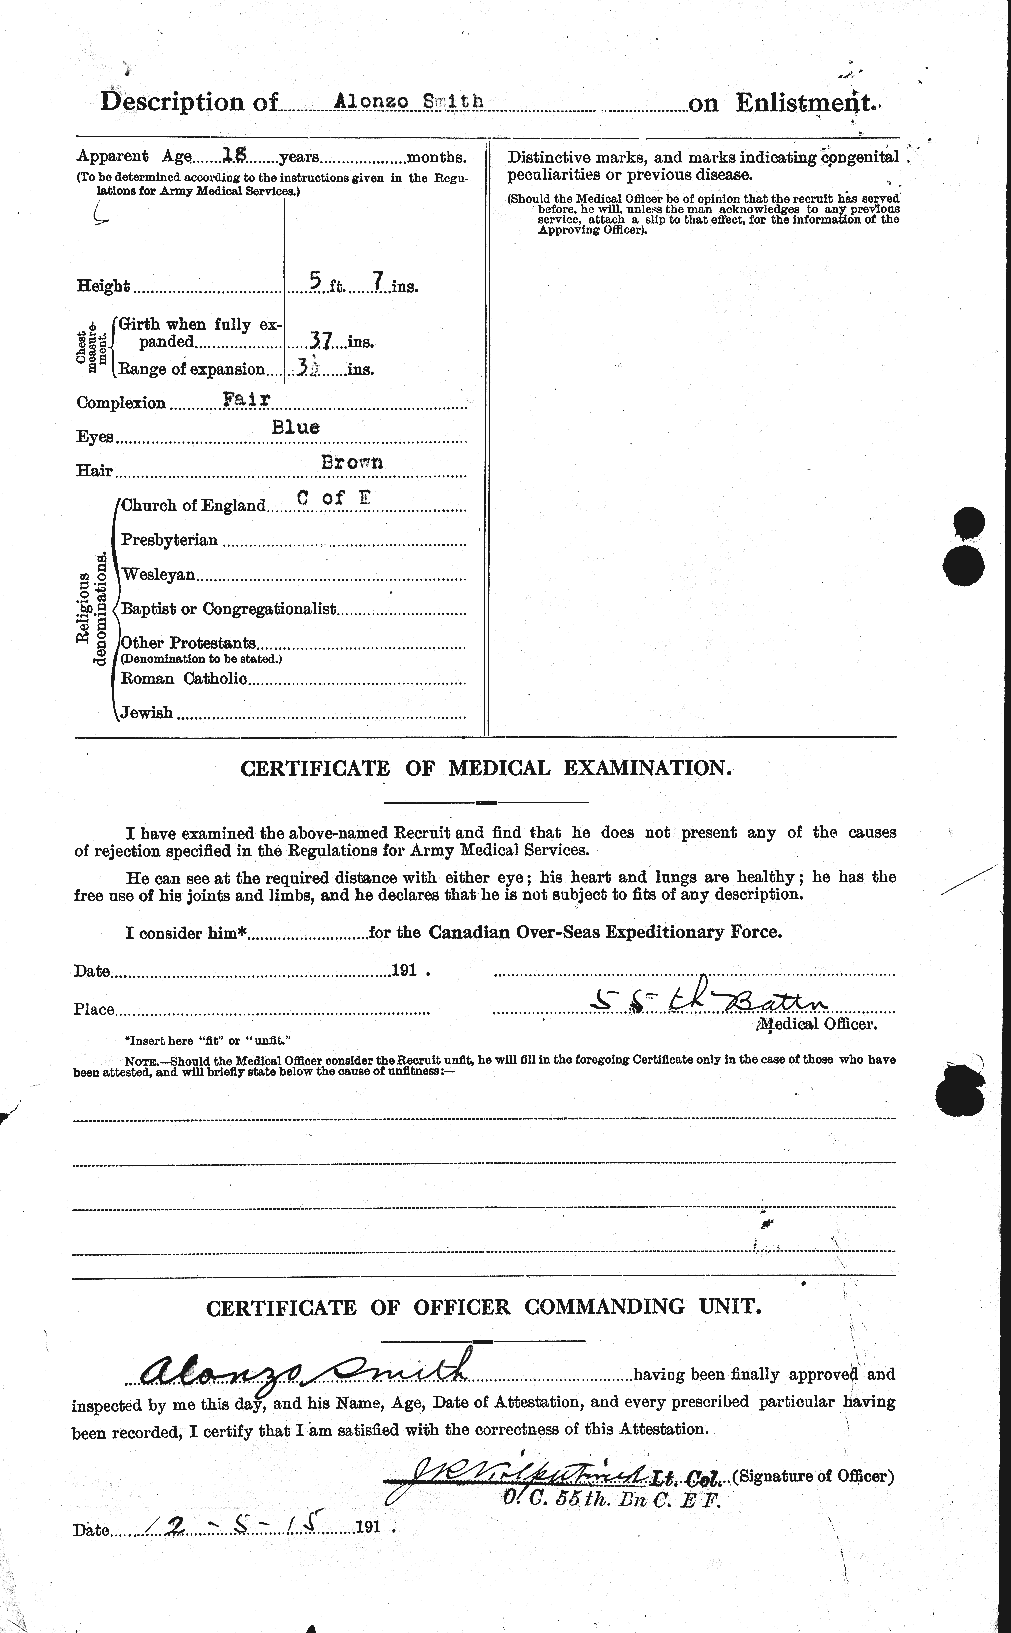 Dossiers du Personnel de la Première Guerre mondiale - CEC 102784b